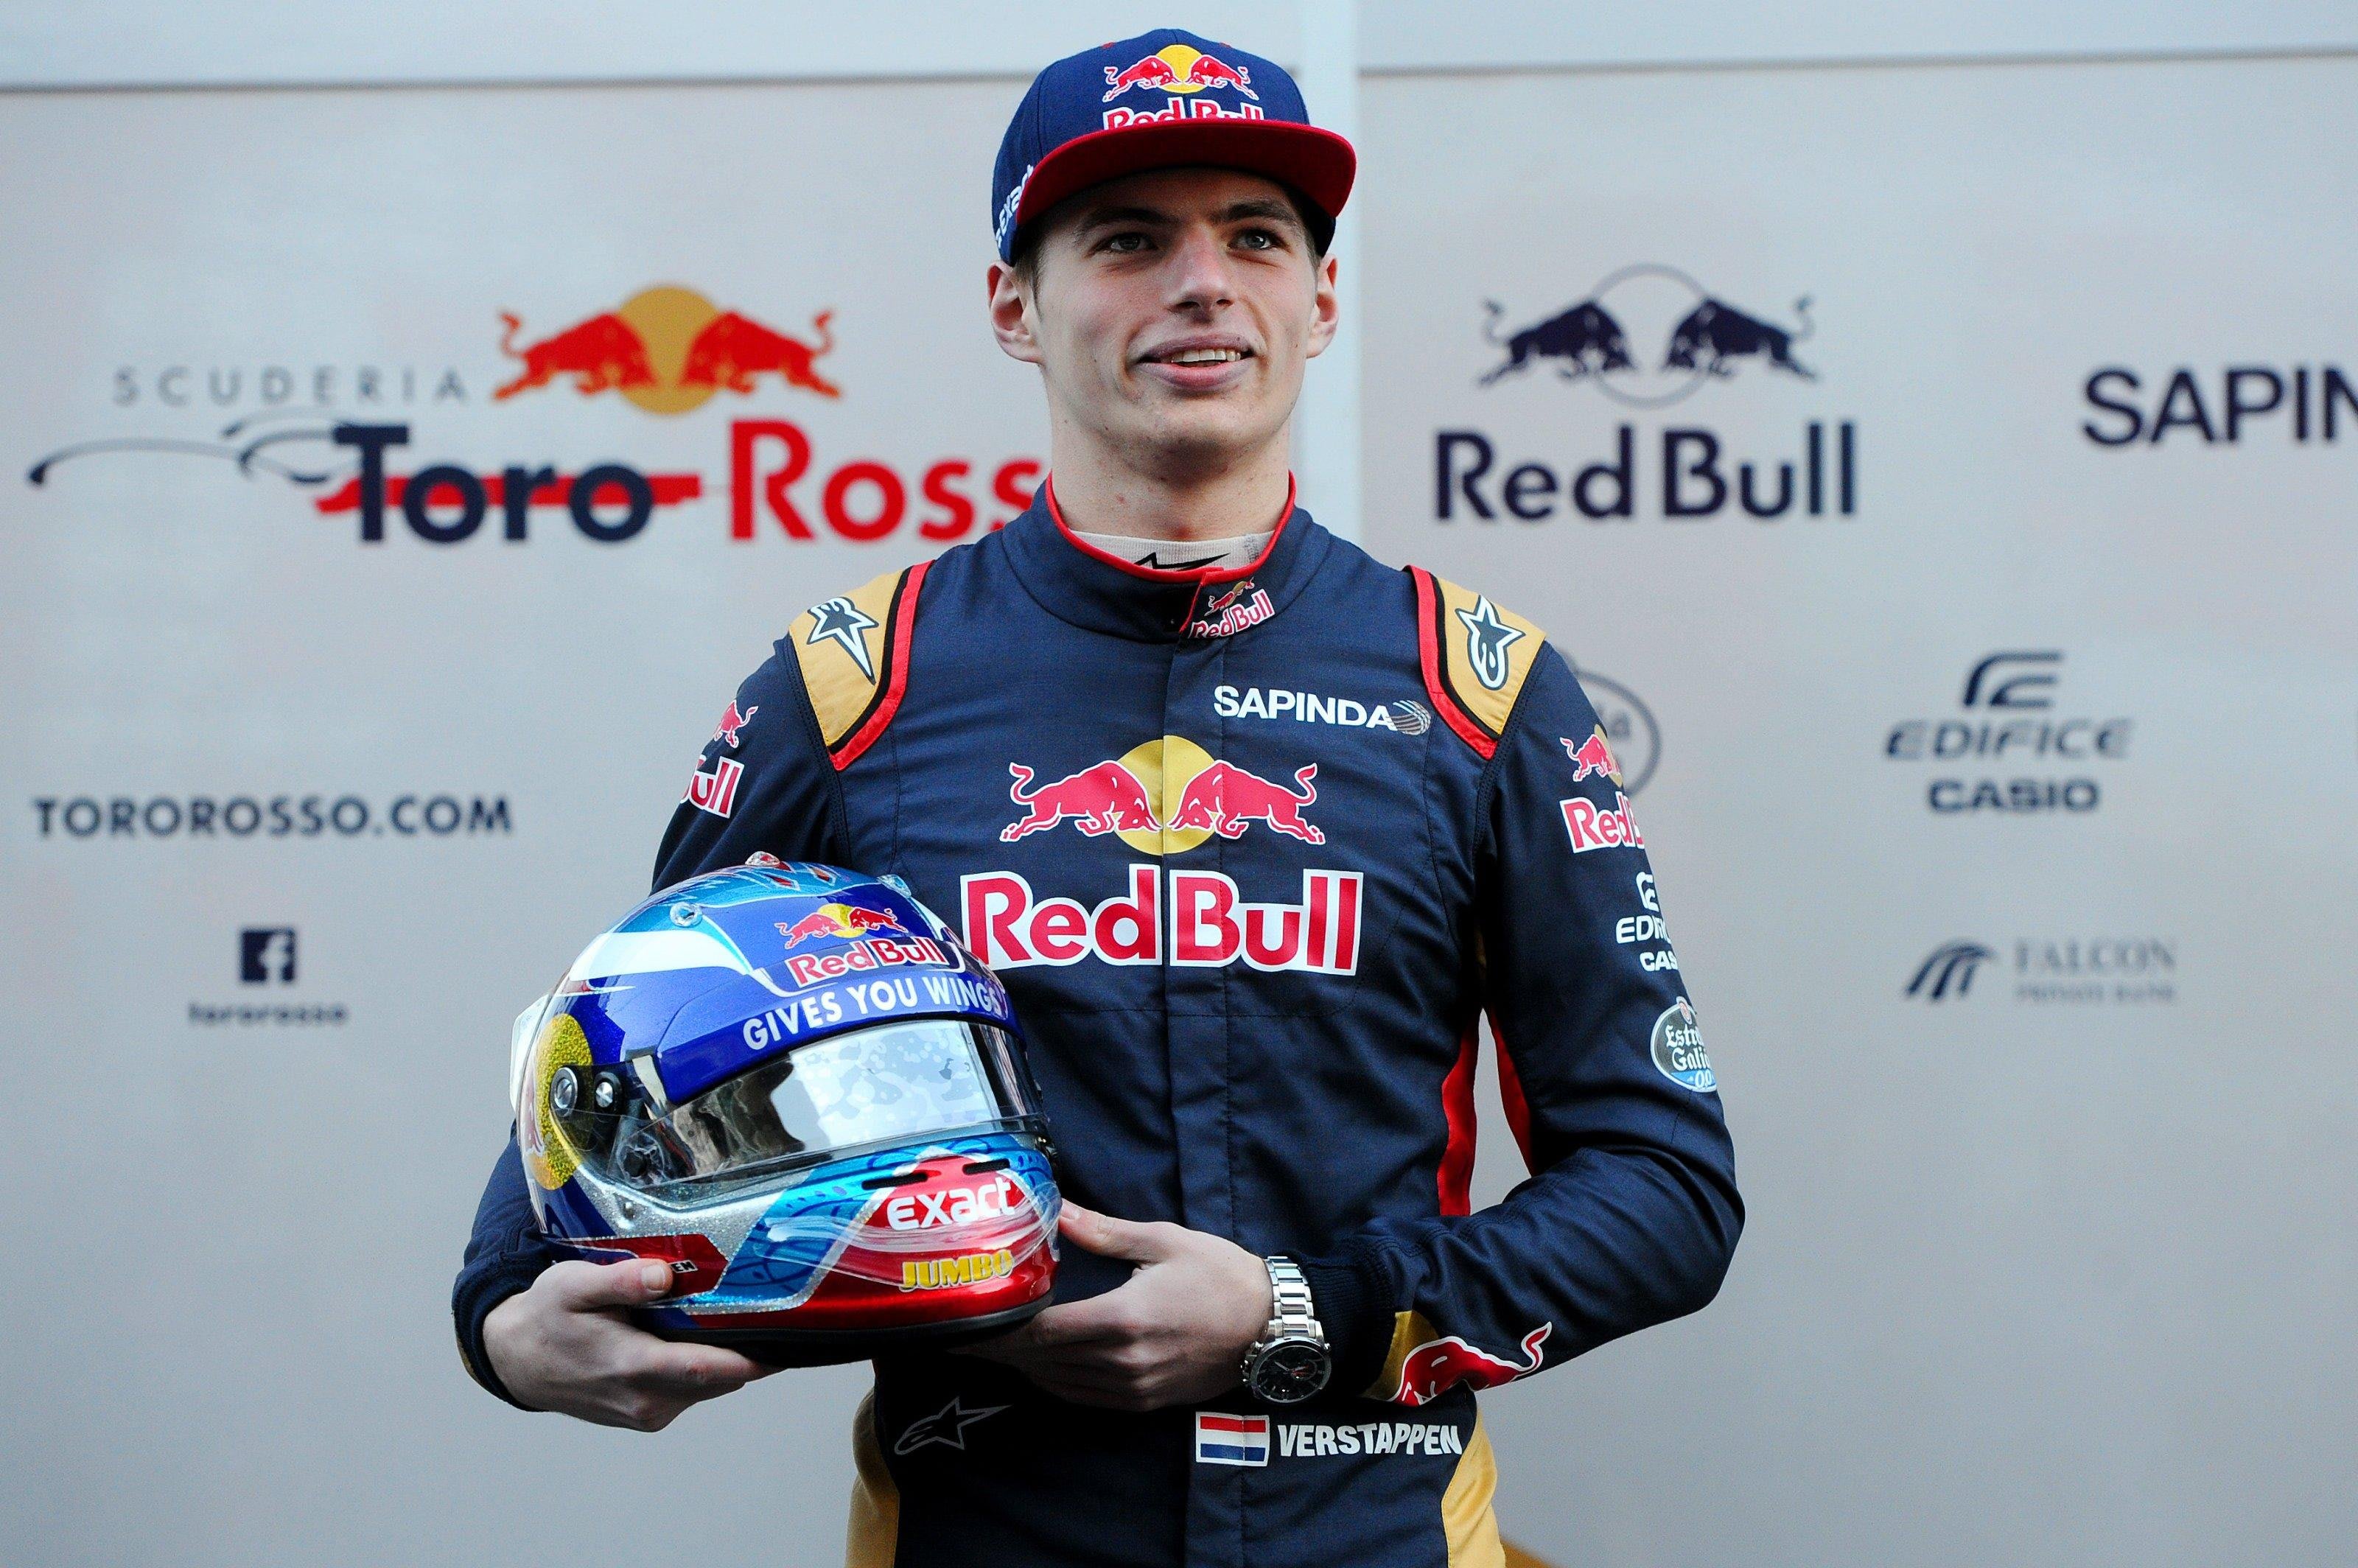 Verduisteren Wat is er mis Postcode Max Verstappen joins Red Bull Racing | Kvyat Toro Rosso